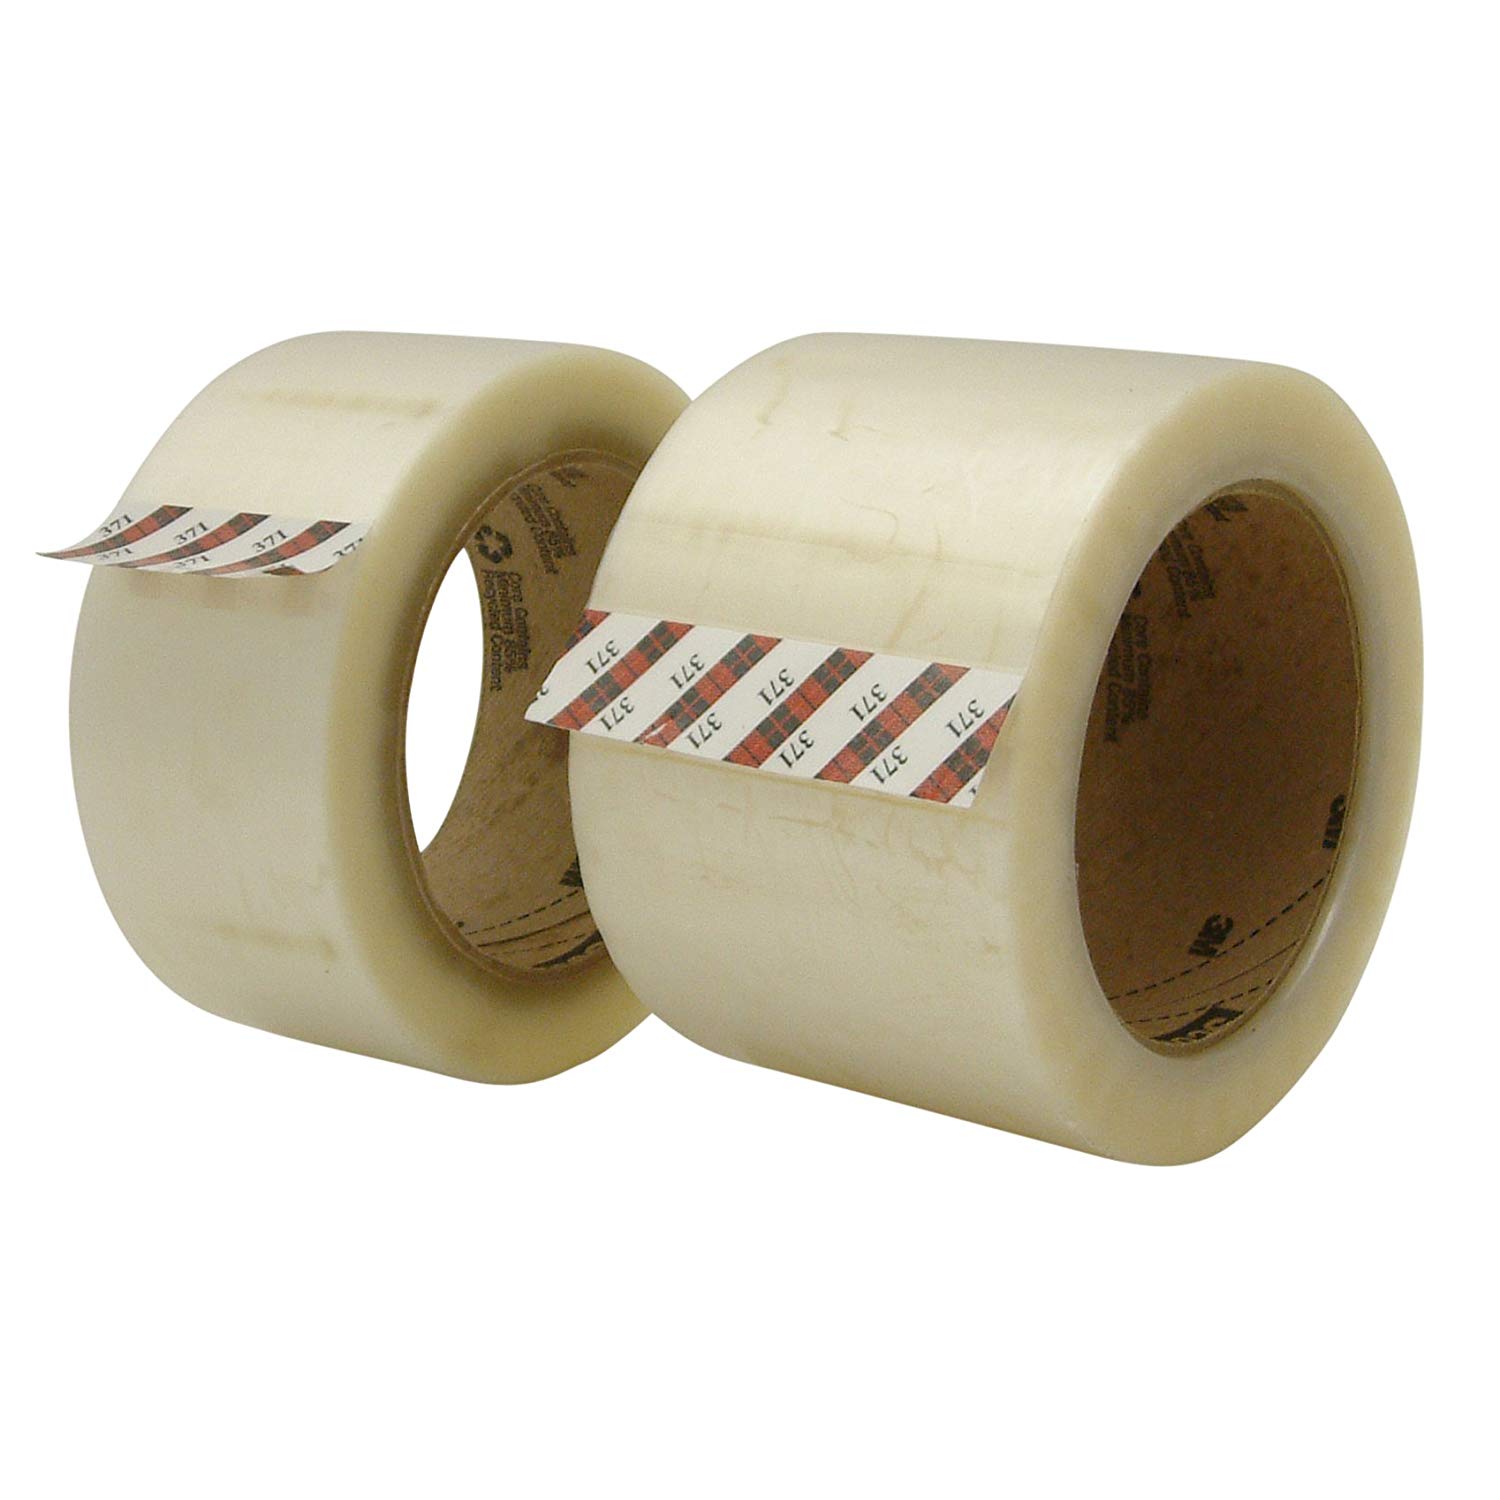 Carton Sealing Tape - 291-0134192 - 3'' x 110 yds 3M 371+ Box Sealing Tape